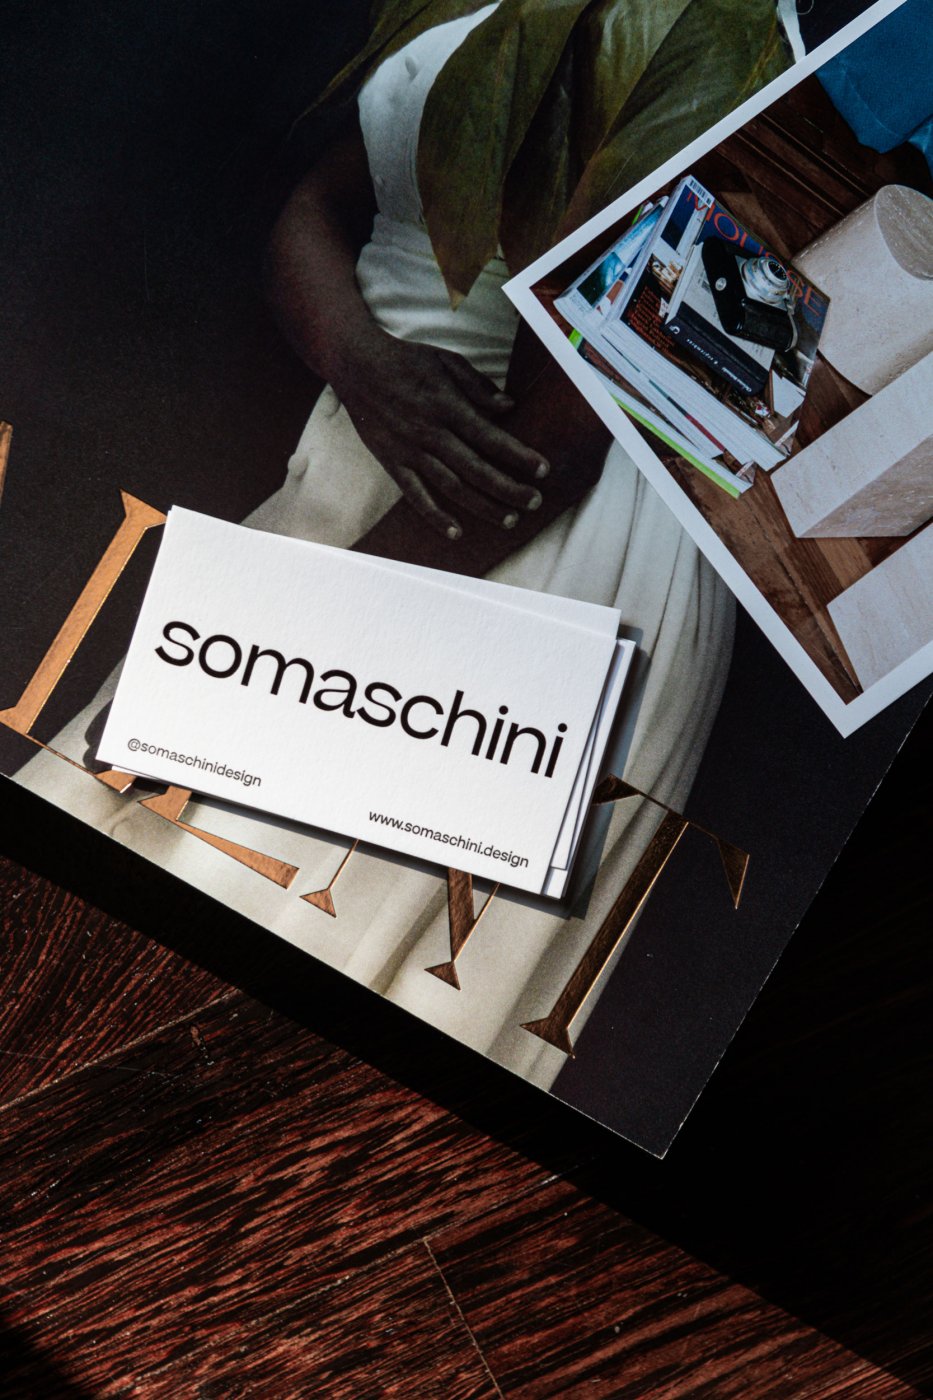 Somaschini_Business_Cards.jpg